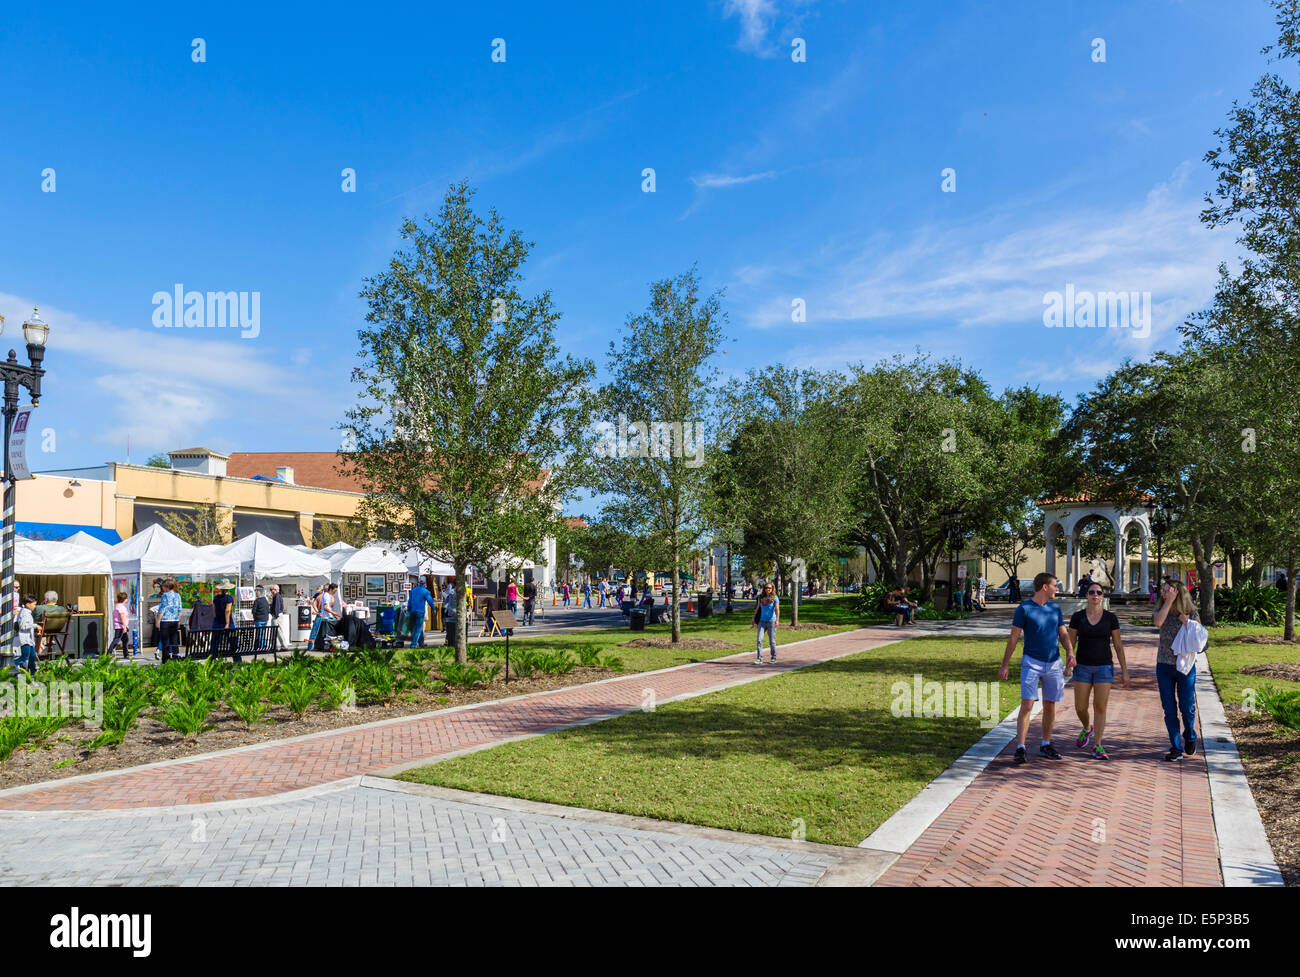 Le quartier de San Marco de Jacksonville pendant la San Marco Art Festival en novembre 2013, Florida, USA Banque D'Images